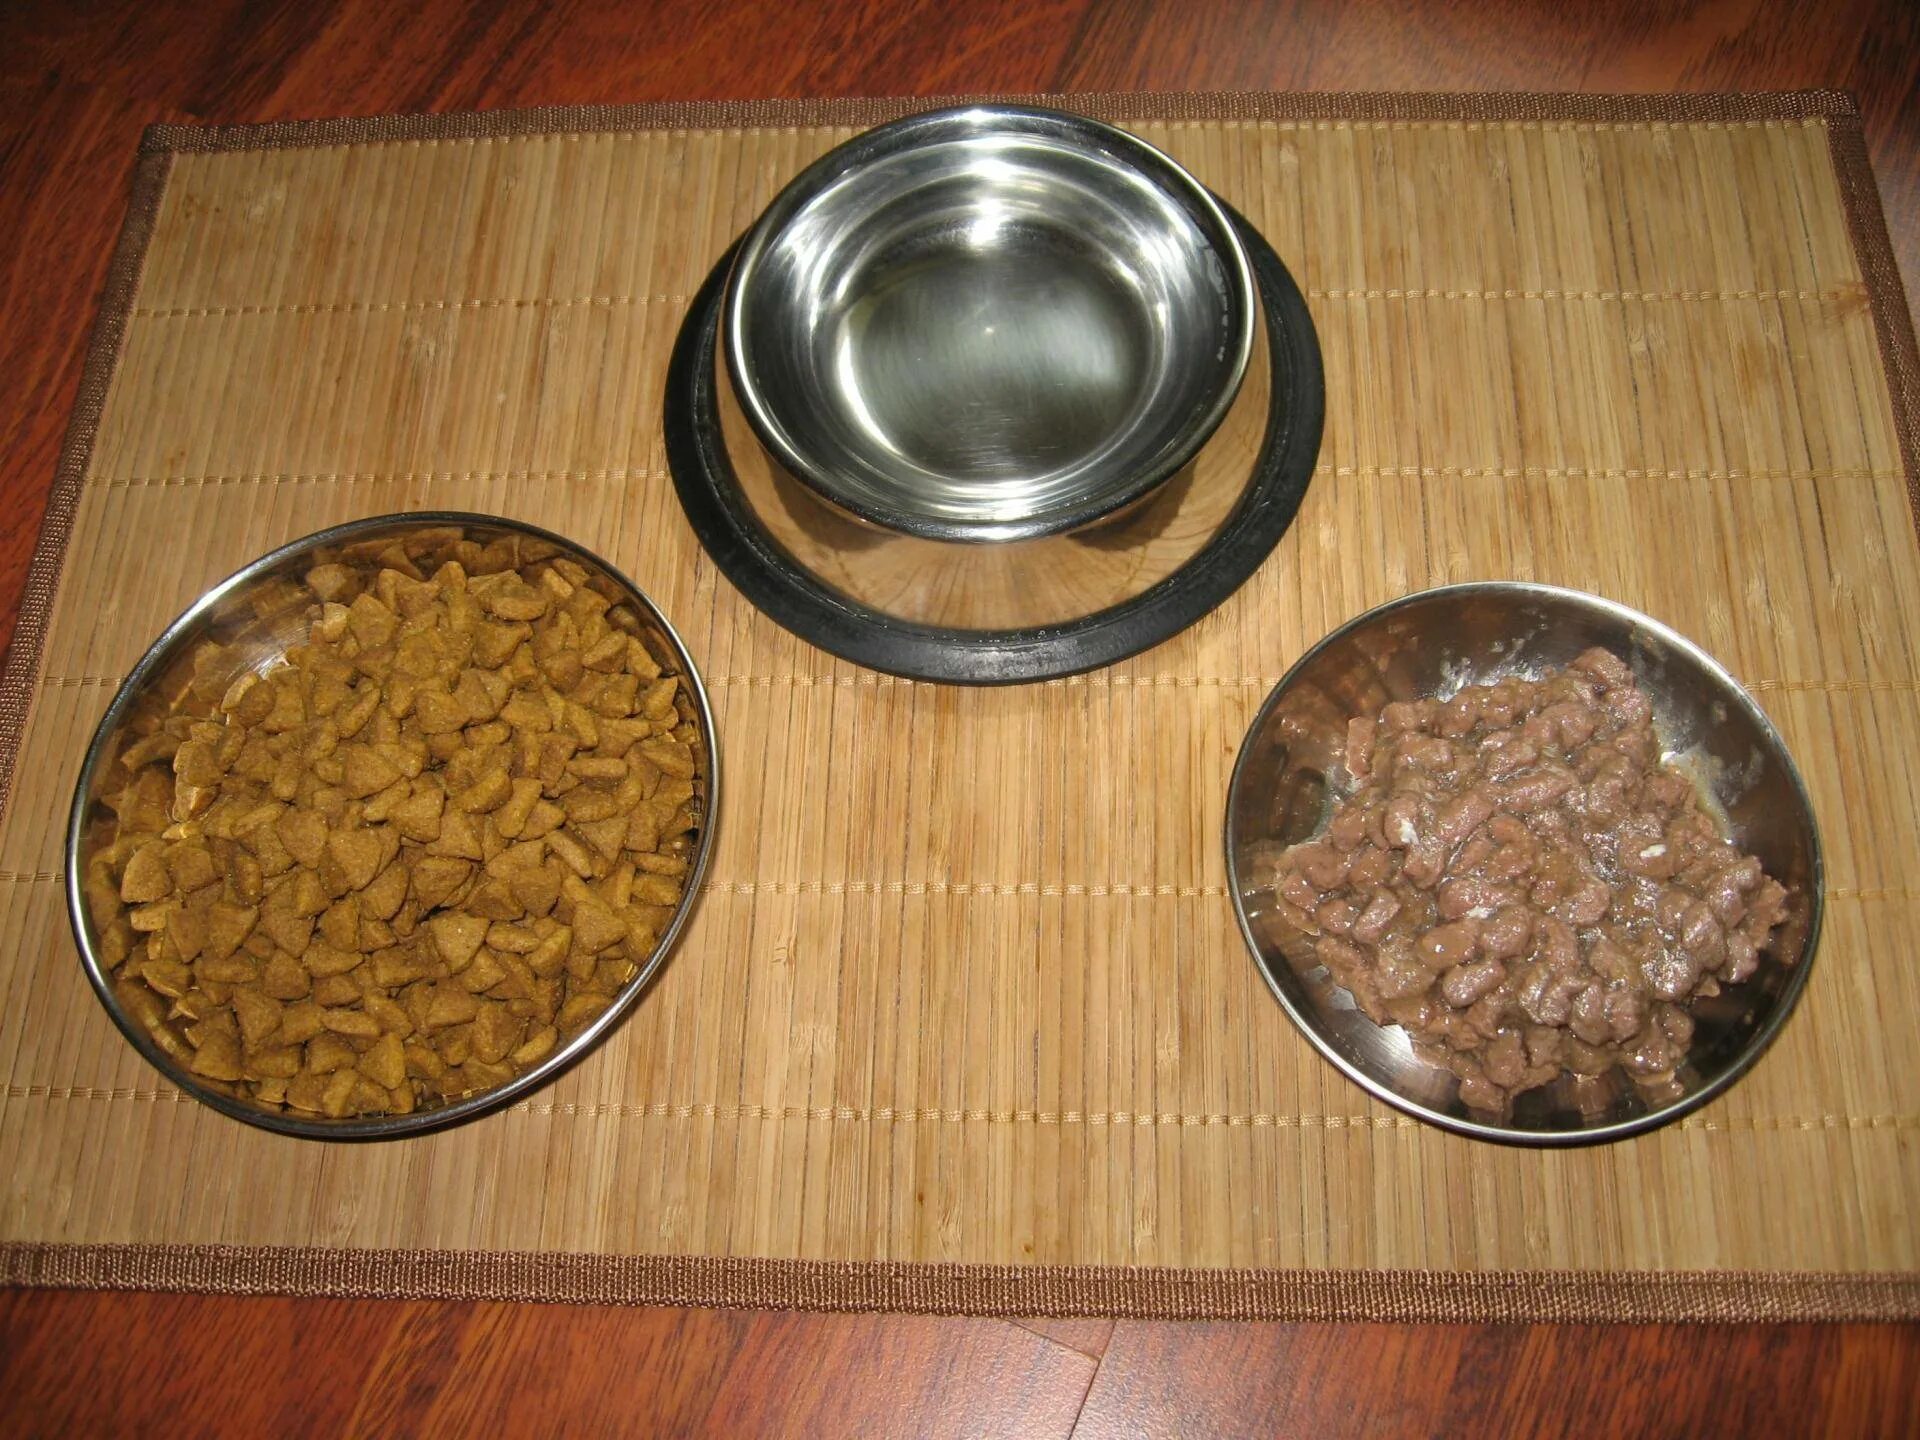 Порция для кота. Натуральное питание для котов миска. Размоченный сухой корм. Миски с кормом натуралка. Натуралка для собак в миске.